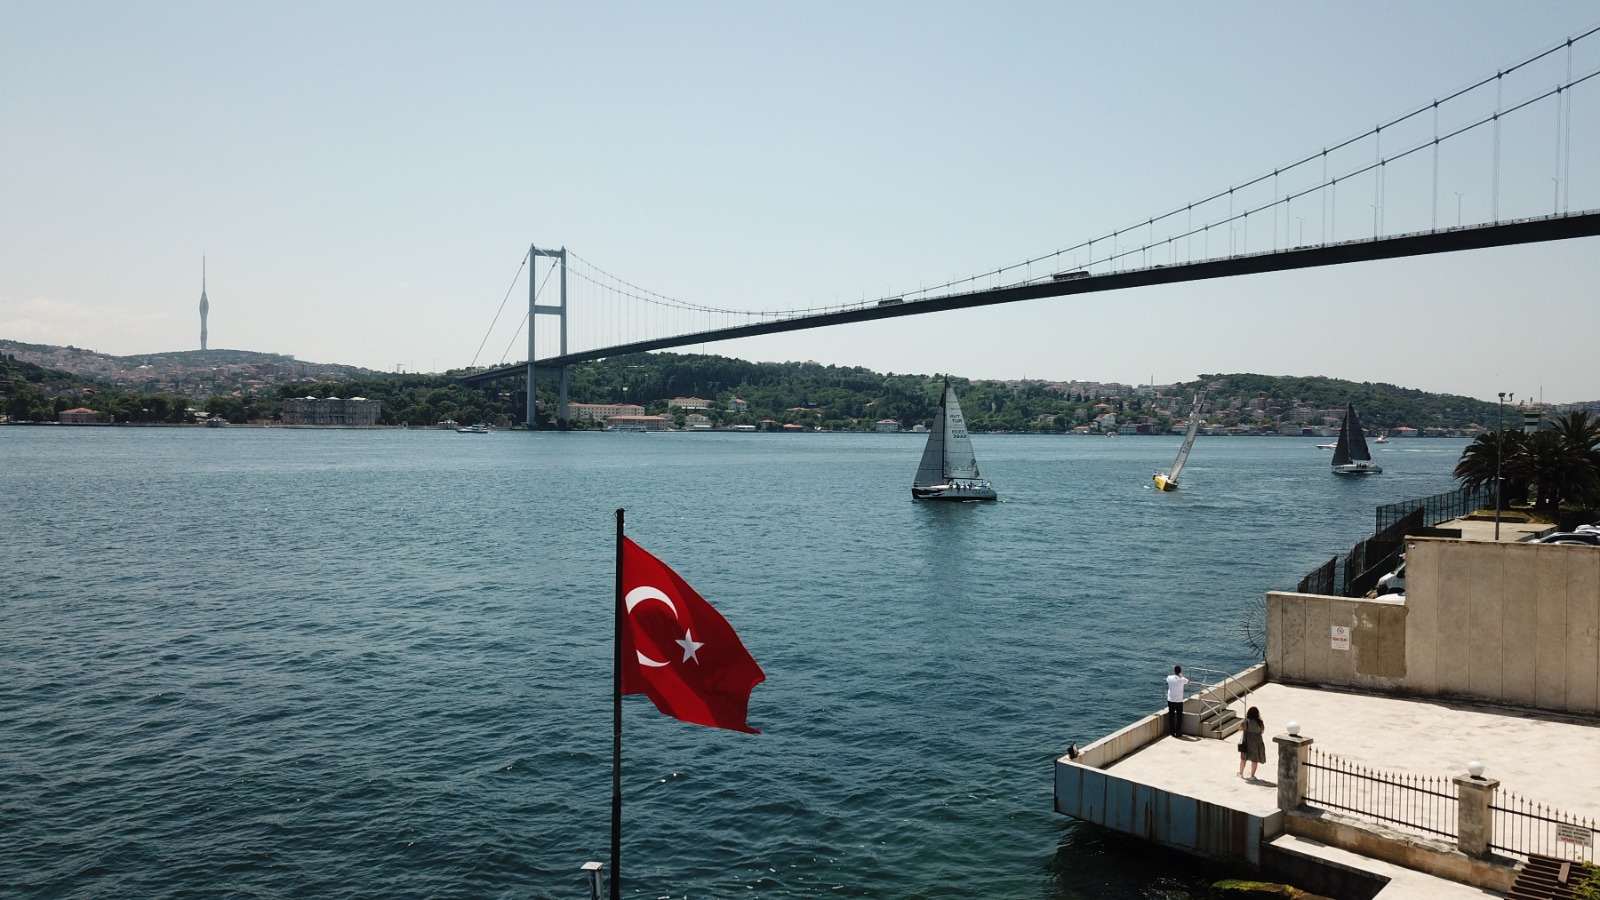 İstanbul Boğazı'nda yelkenli yarışları havadan görüntülendi 5